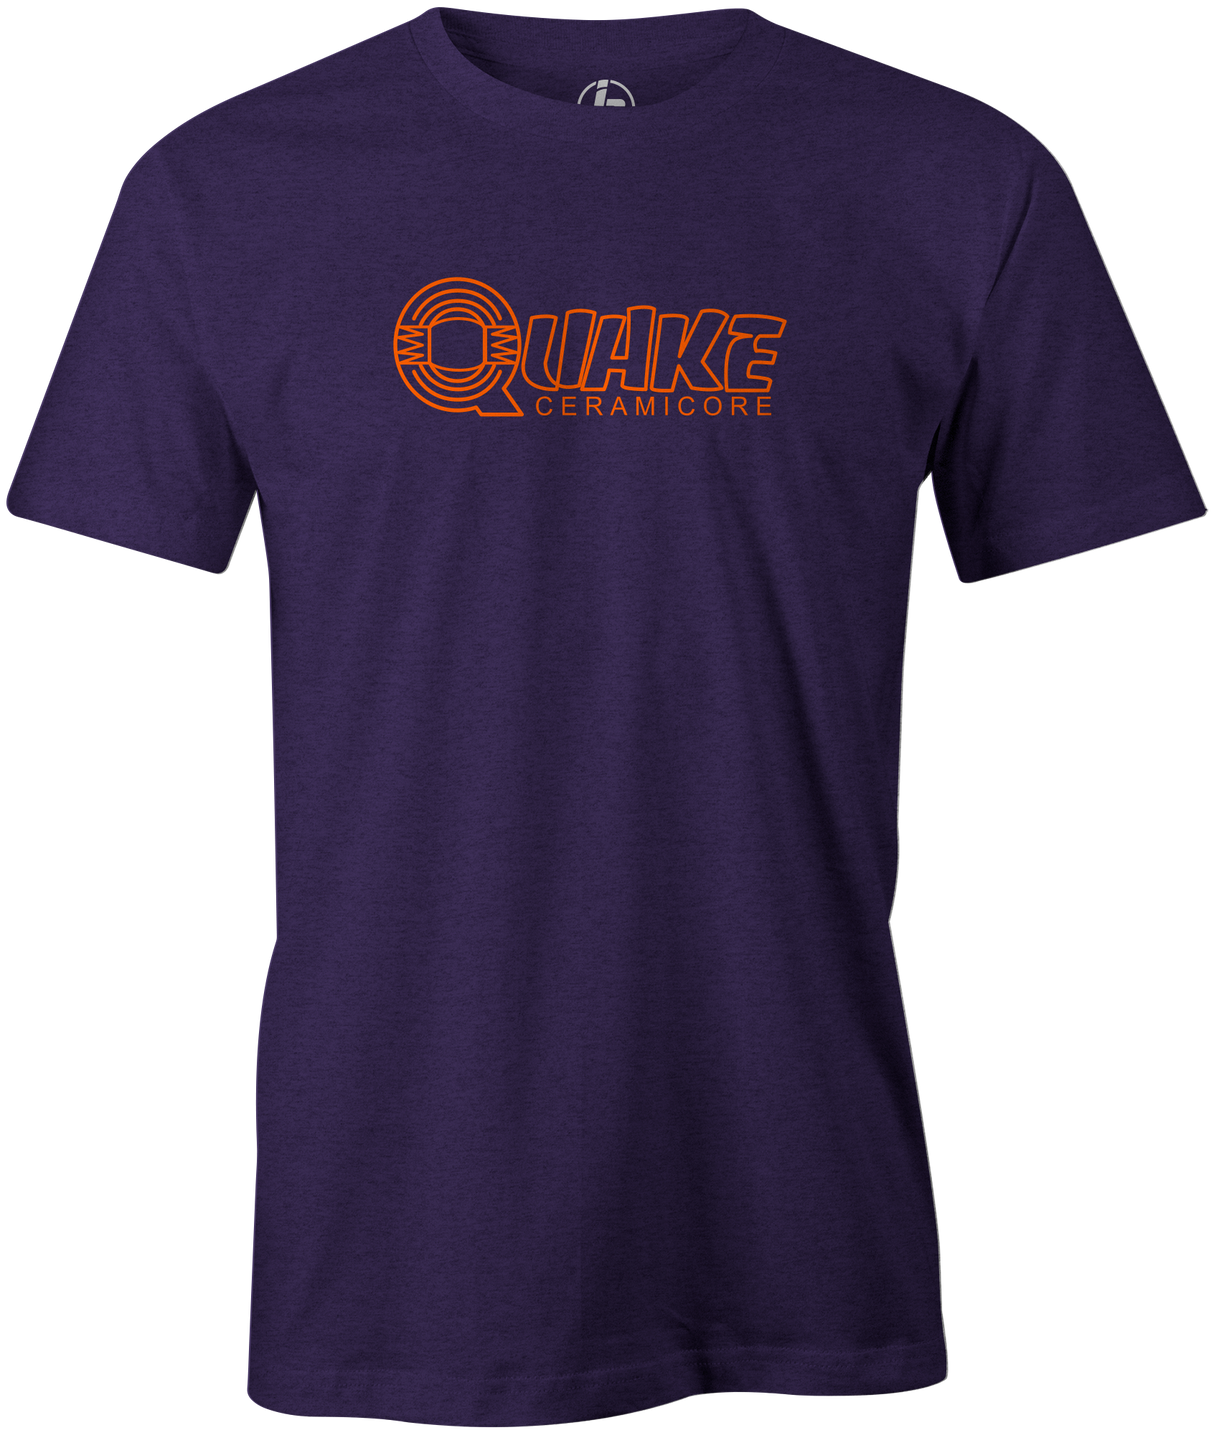 Quake Men's T-shirt, Purple, Bowling, bowling ball, old school, throwback, retro, vintage, tshirt, tee, tee shirt, tee-shirt.